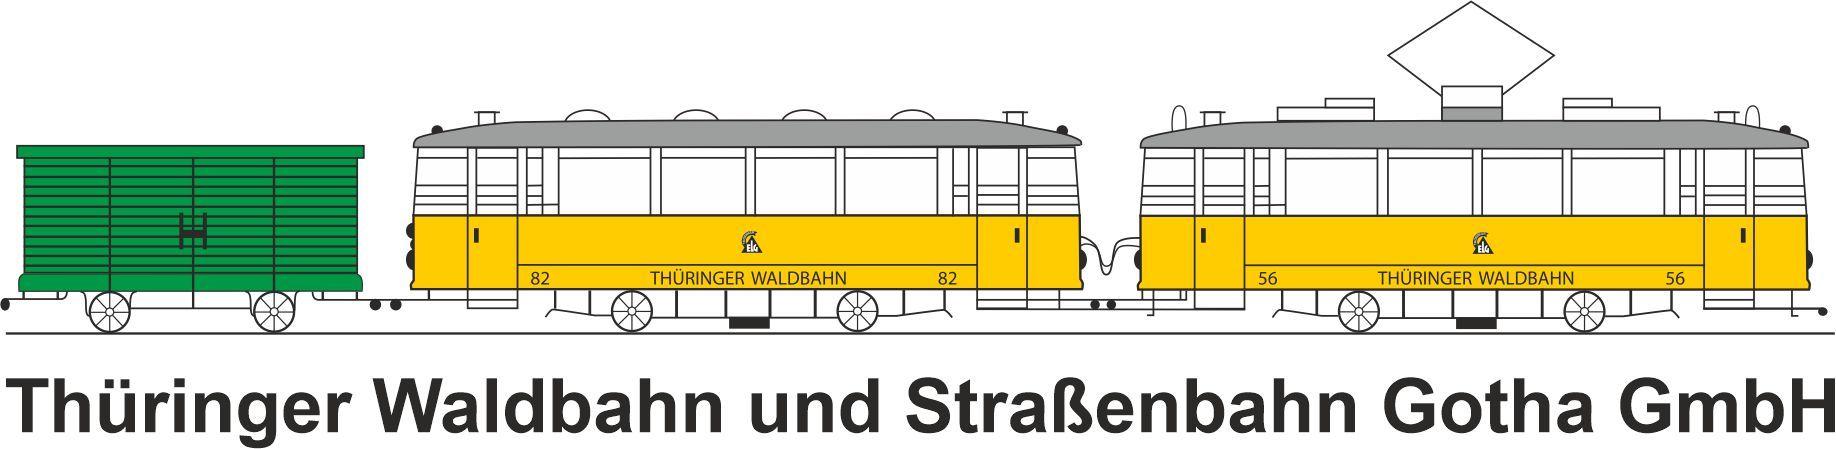 Logo der Thüringer Waldbahn und Straßenbahn Gotha